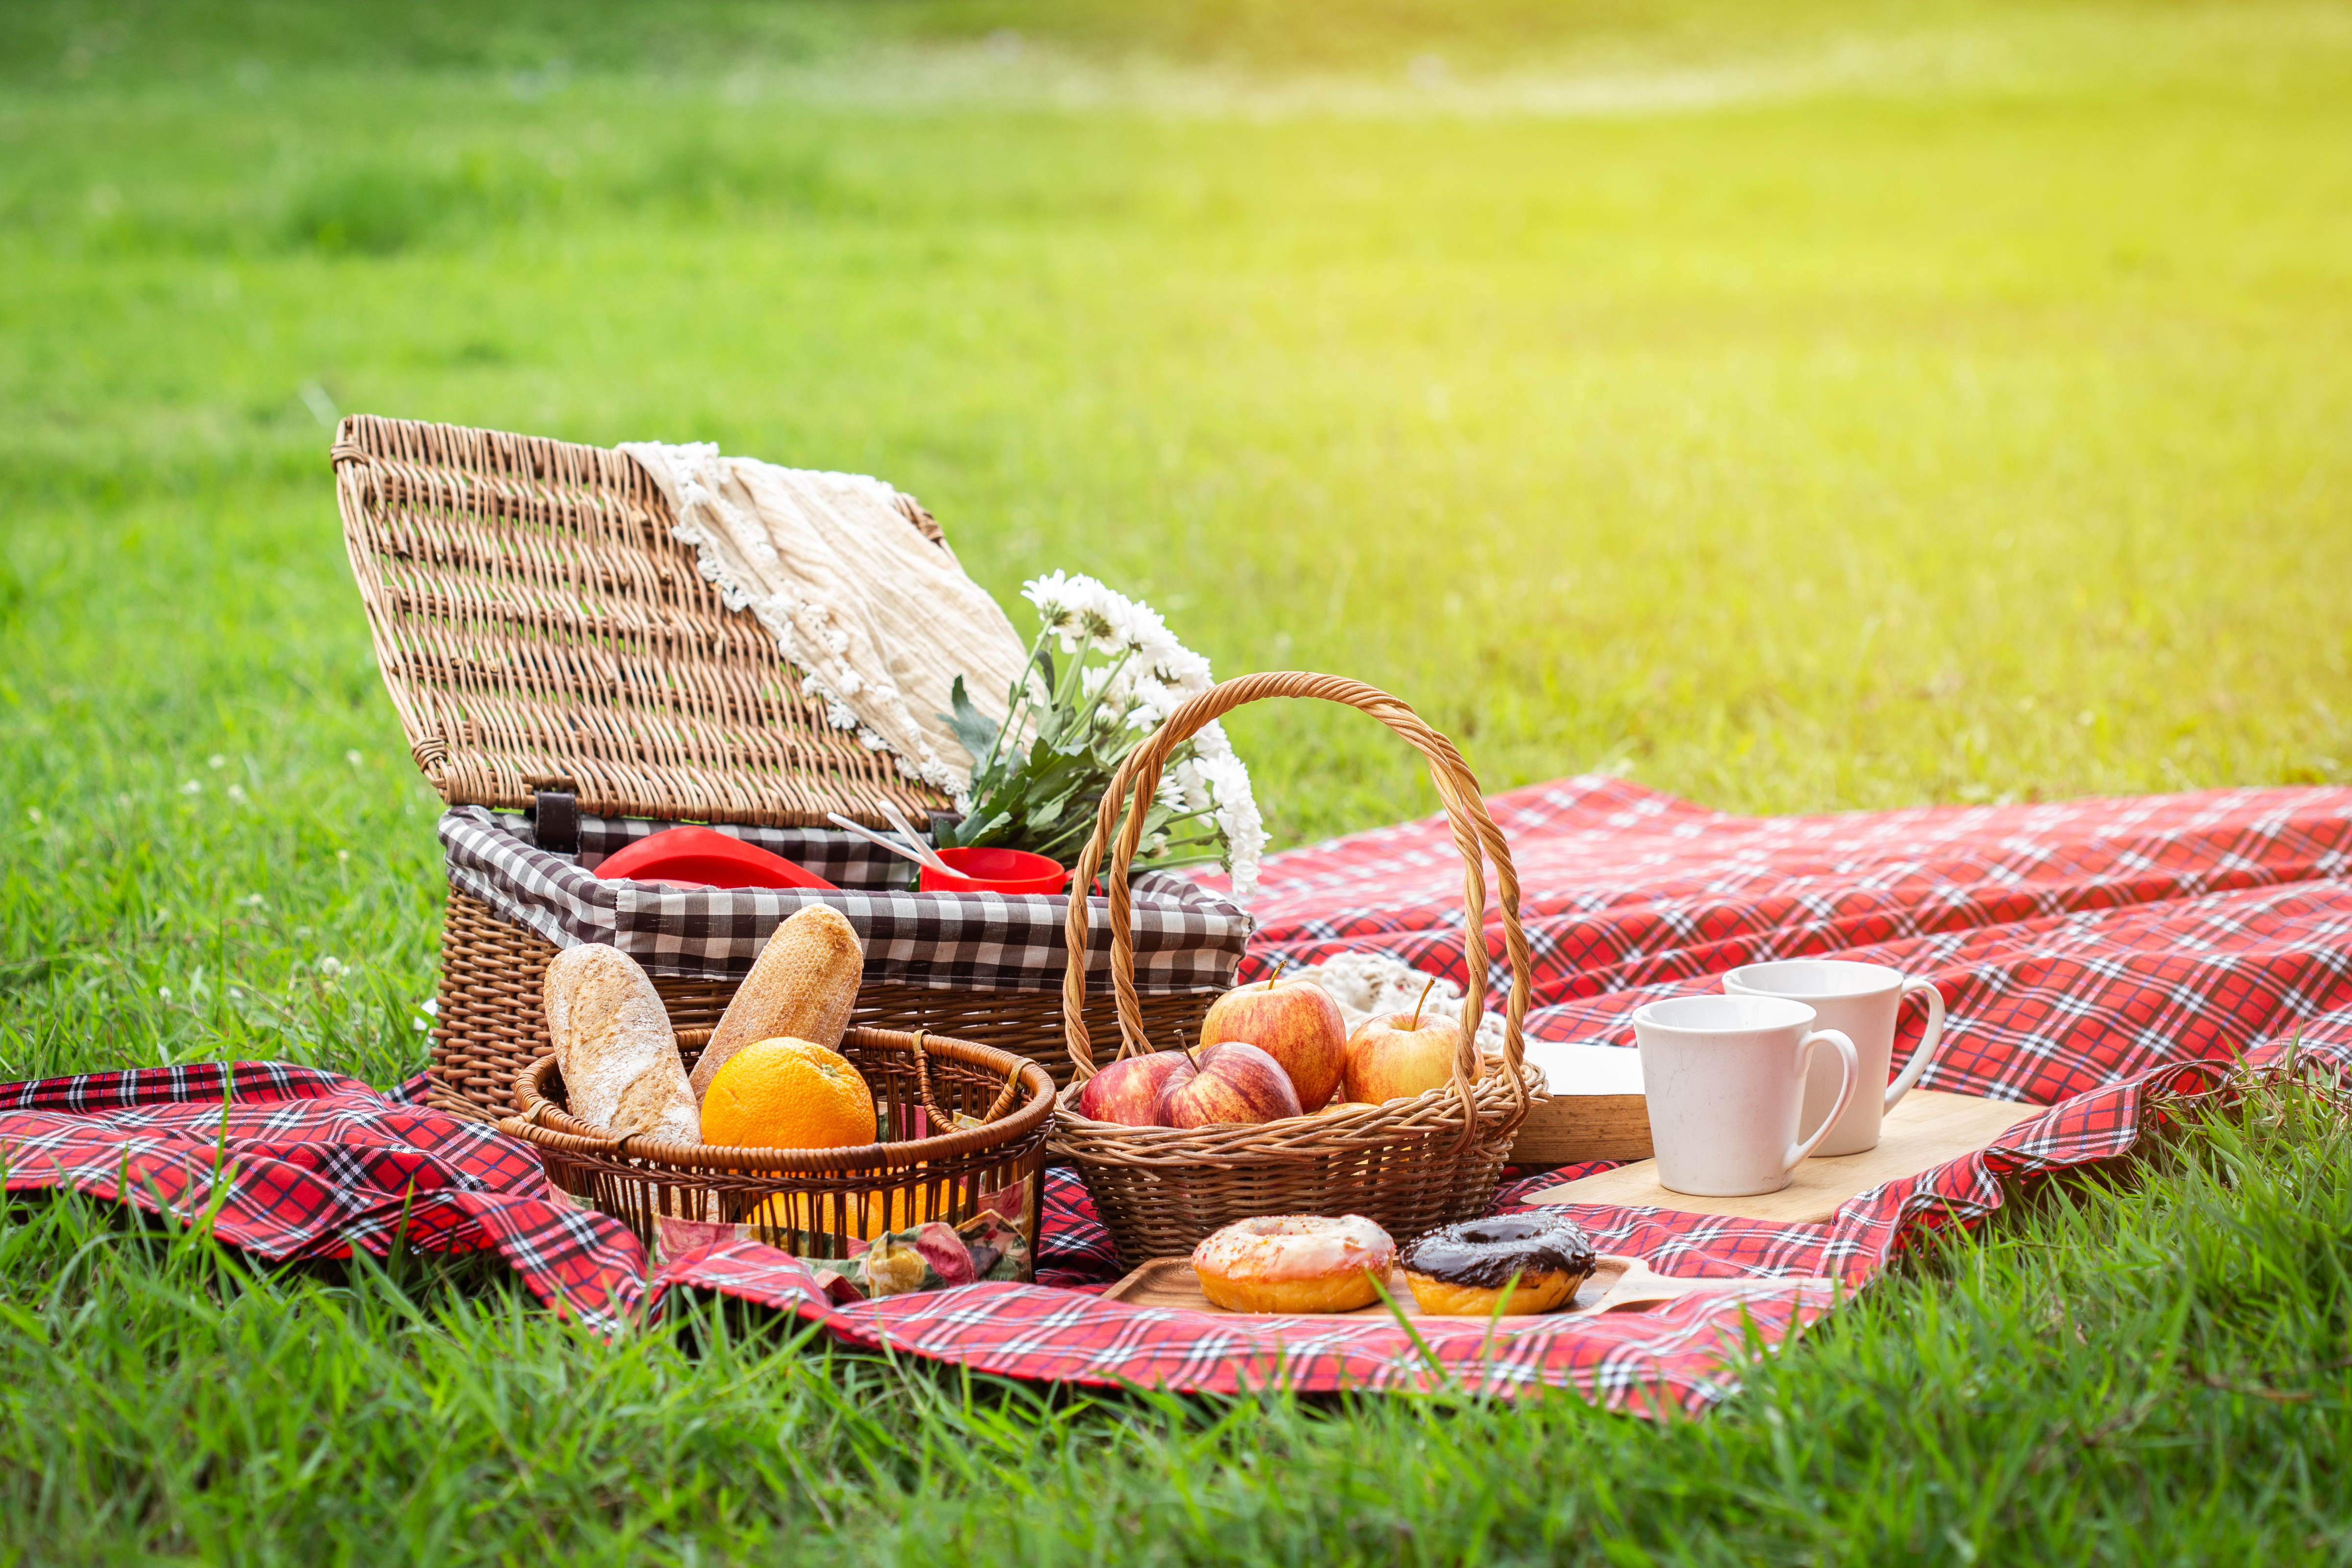 Picnic on meadow | Shutterstock